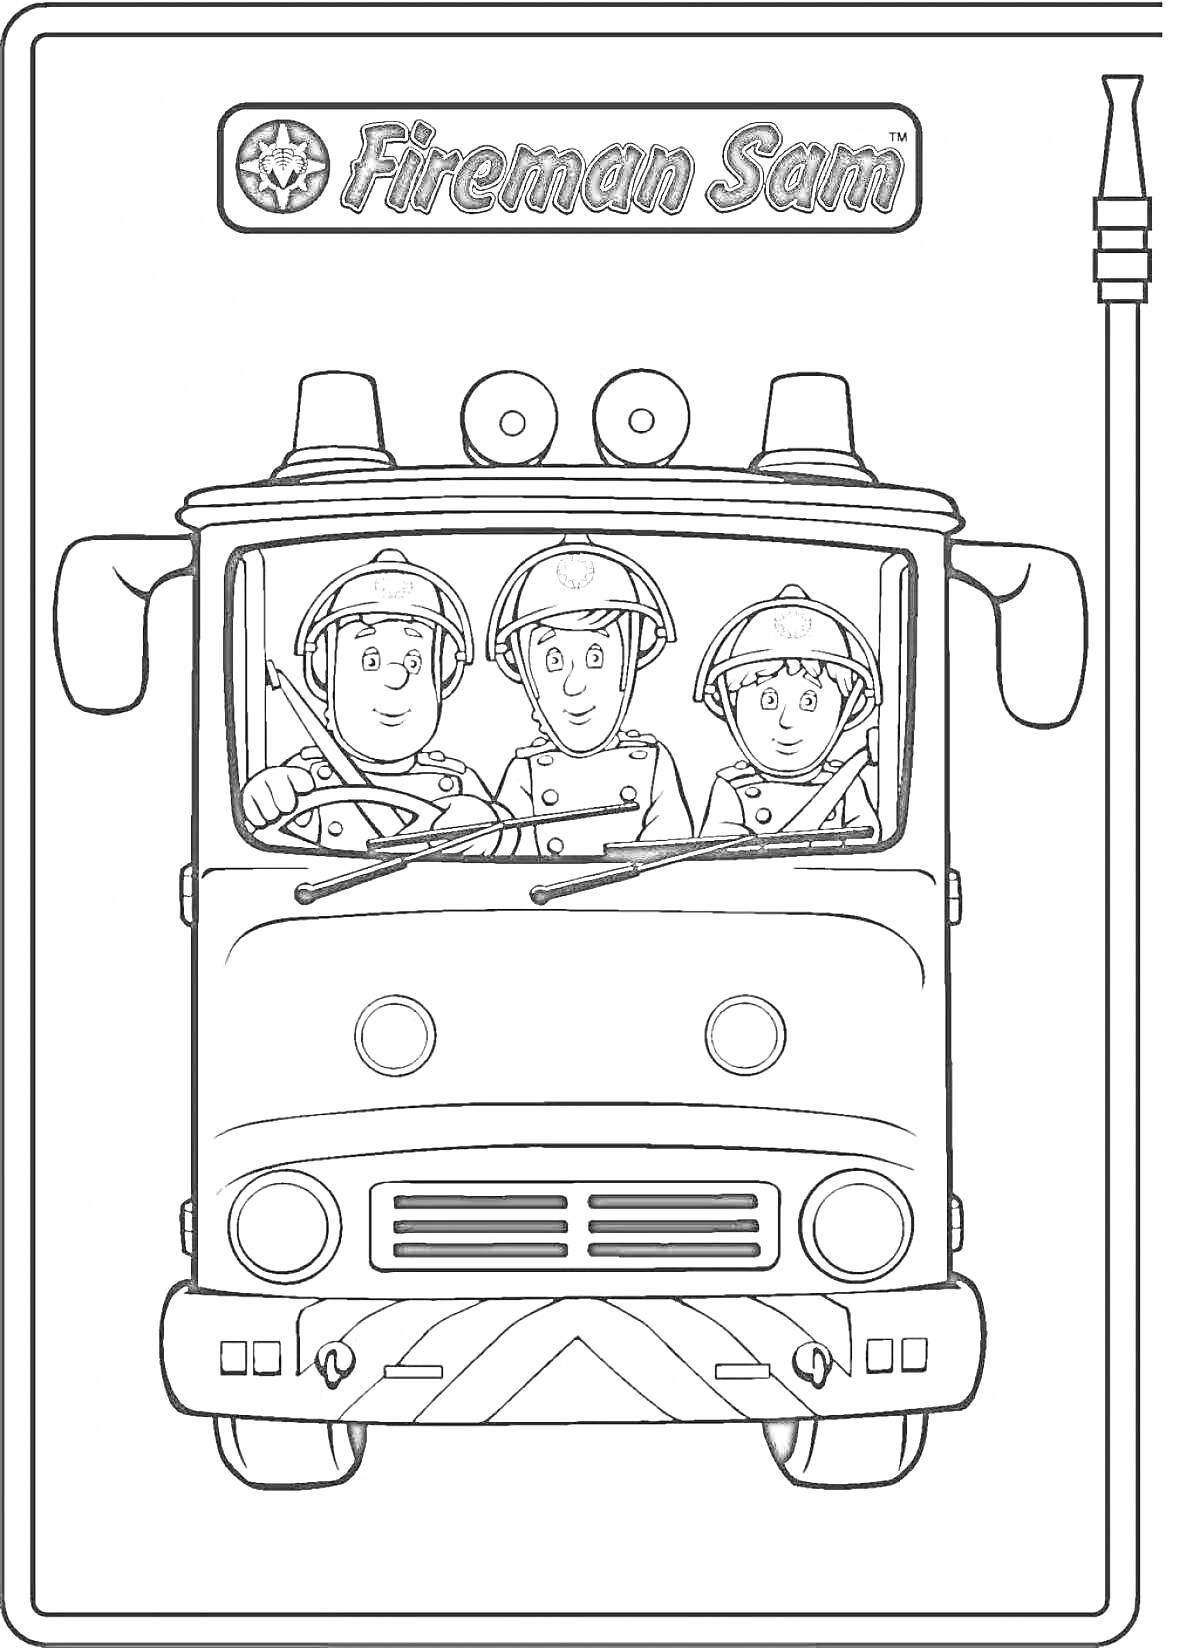 На раскраске изображено: Пожарный Сэм, Пожарная машина, Пожарные, Шланг, Транспорт, Три человека, Безопасность, Спасатели